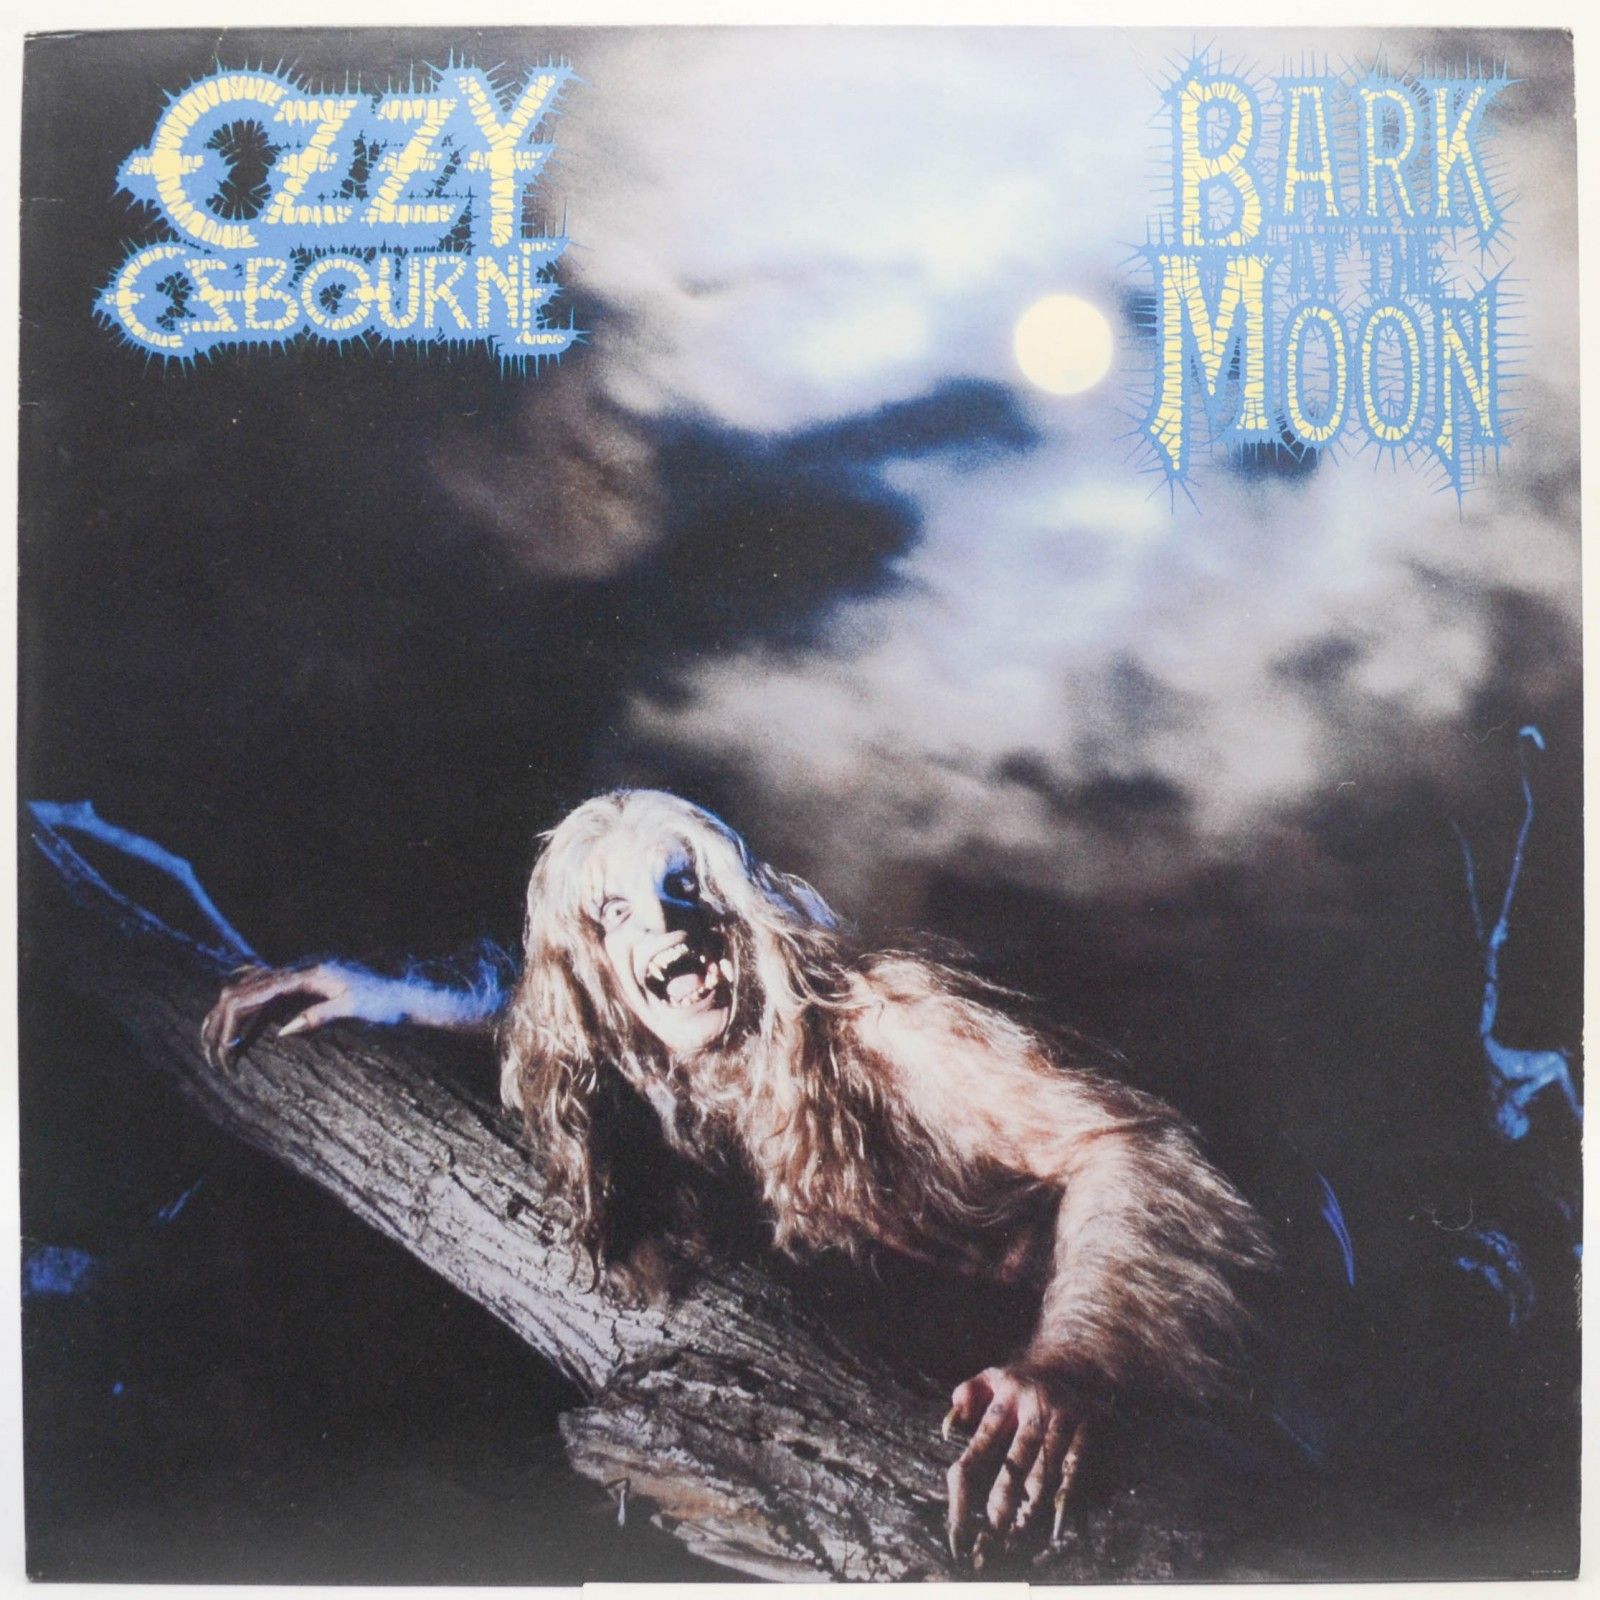 Ozzy Osbourne — Bark At The Moon, 1983